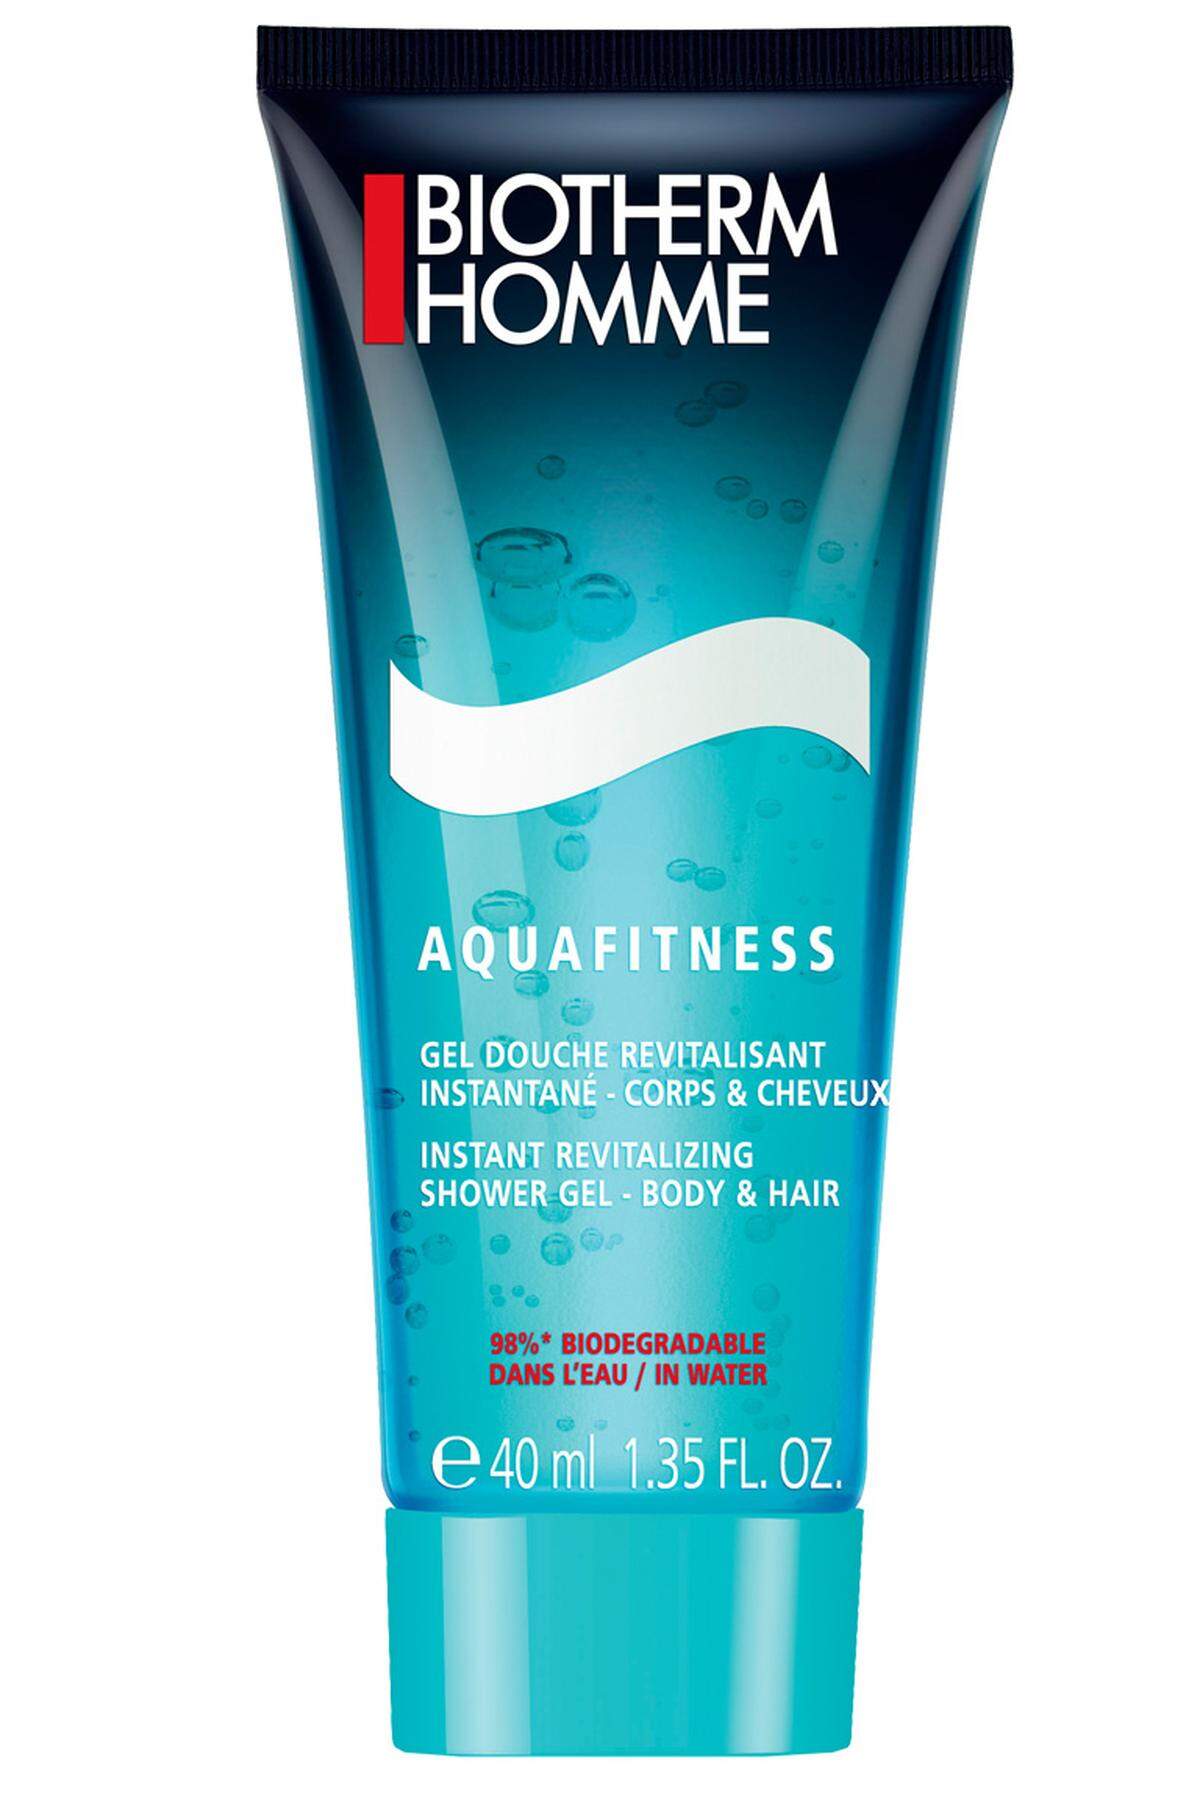 ... „Aquafitness“ von Biotherm Homme, um 22 Euro im Fachhandel